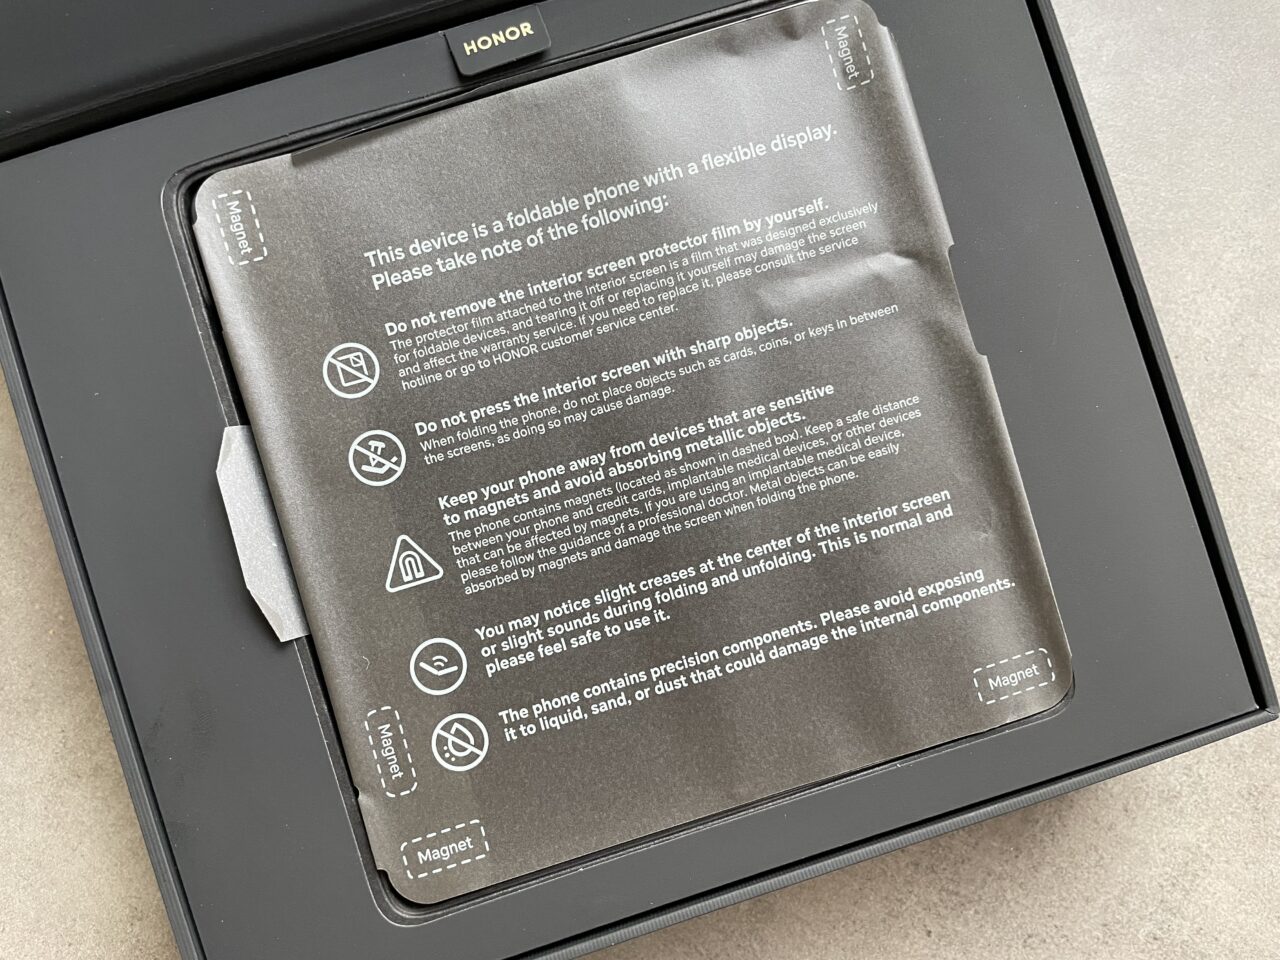 Skladany telefon Honor umieszczony w opakowaniu z plastikowym etui ochronnym, na którym znajdują się ostrzeżenia i wskazówki dotyczące użytkowania, w tym unikania kontaktu z cieczą, magnesami i ostrymi przedmiotami.